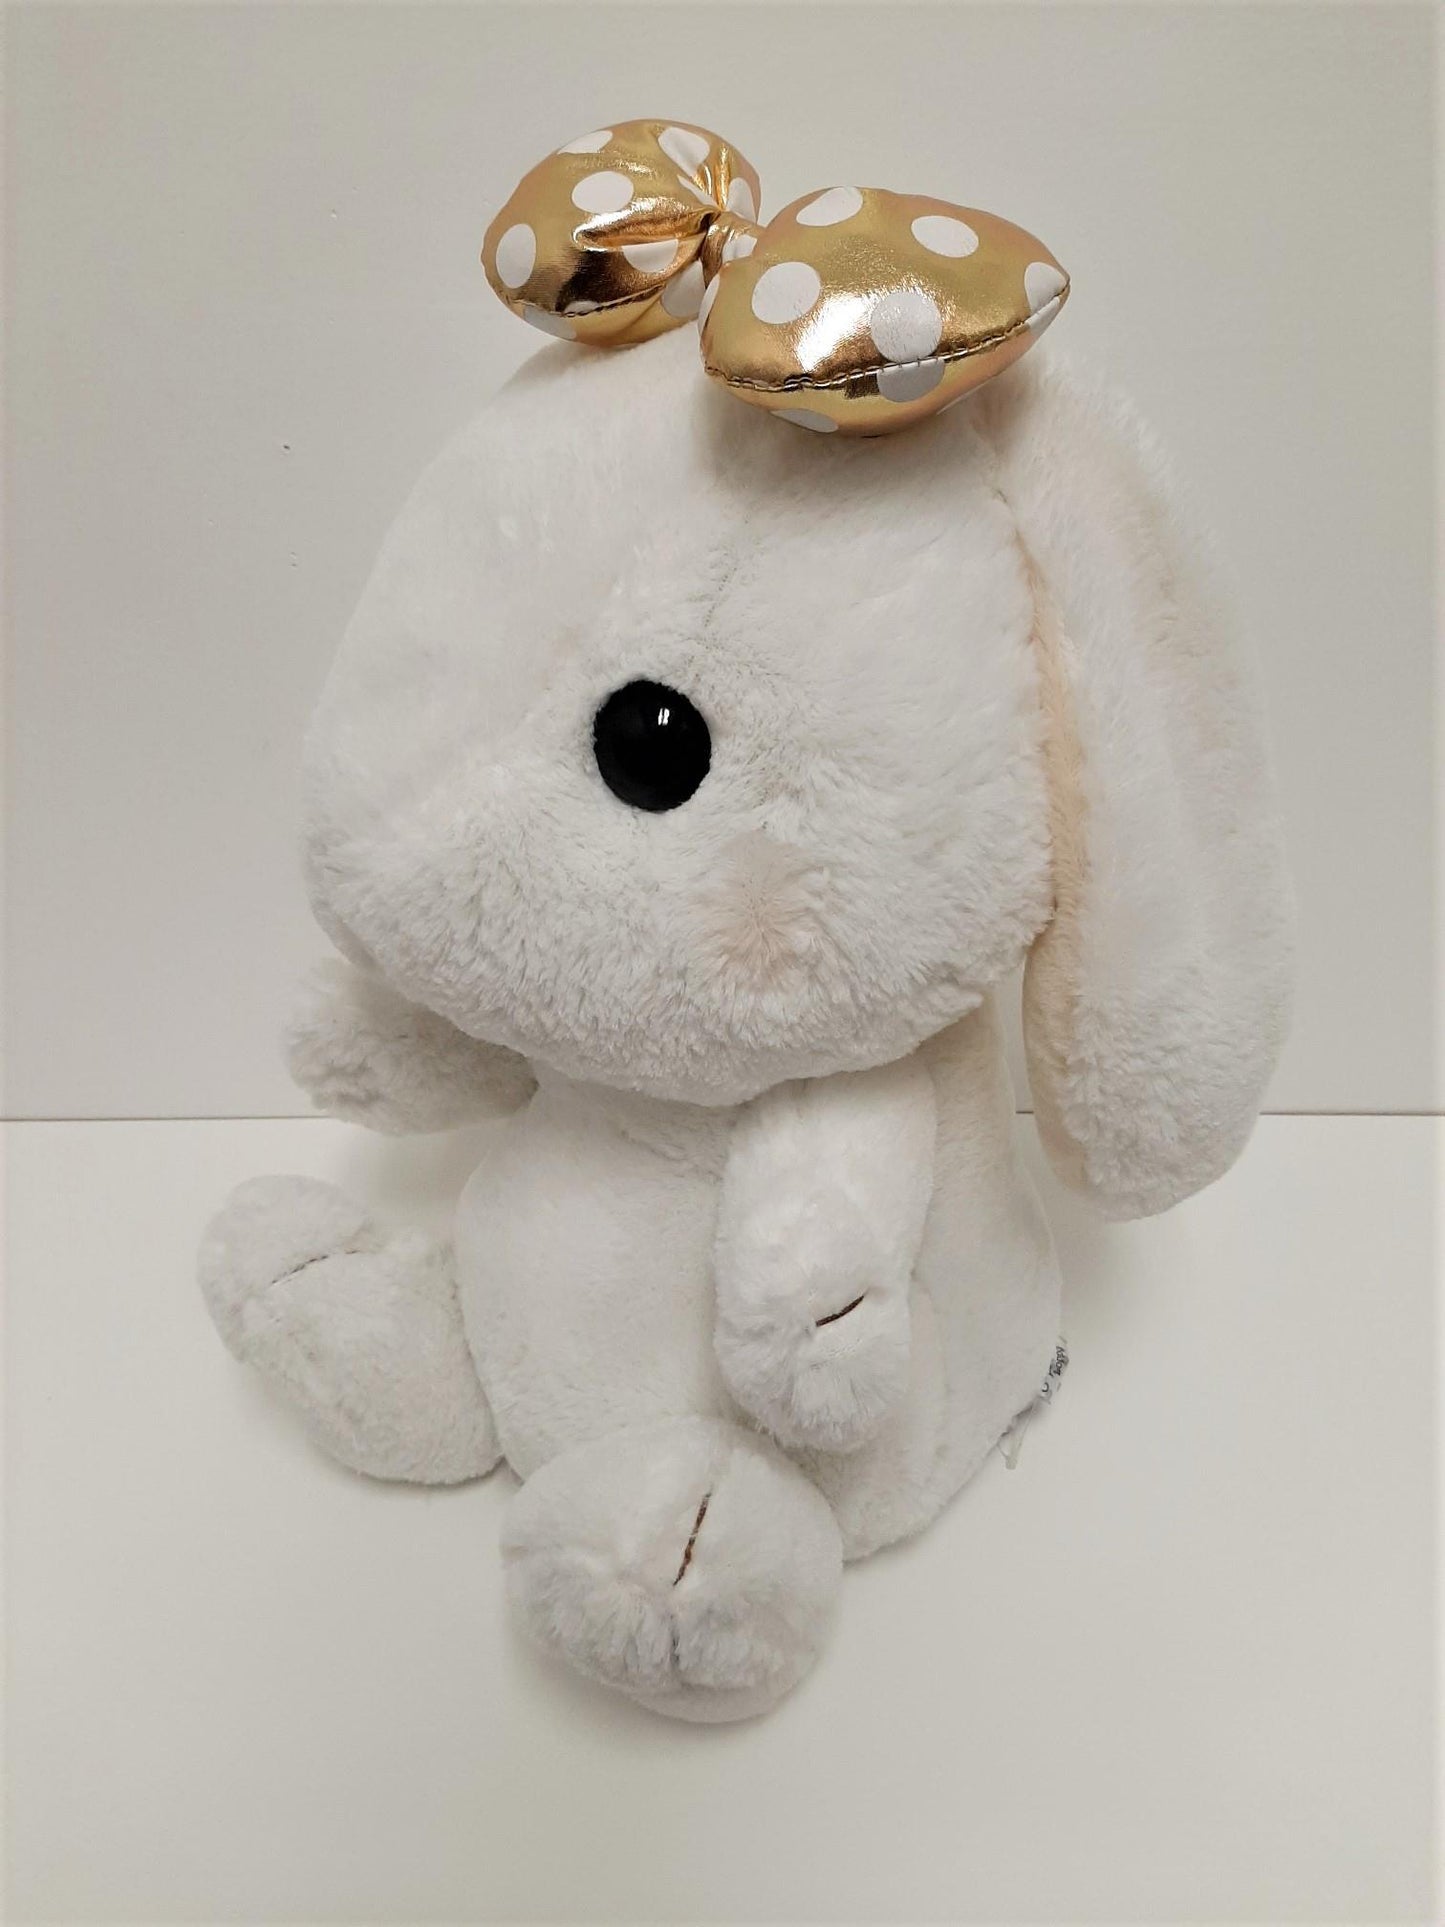 Amuse: White Bunny Gold Polka-Dot Bow 16" Plush